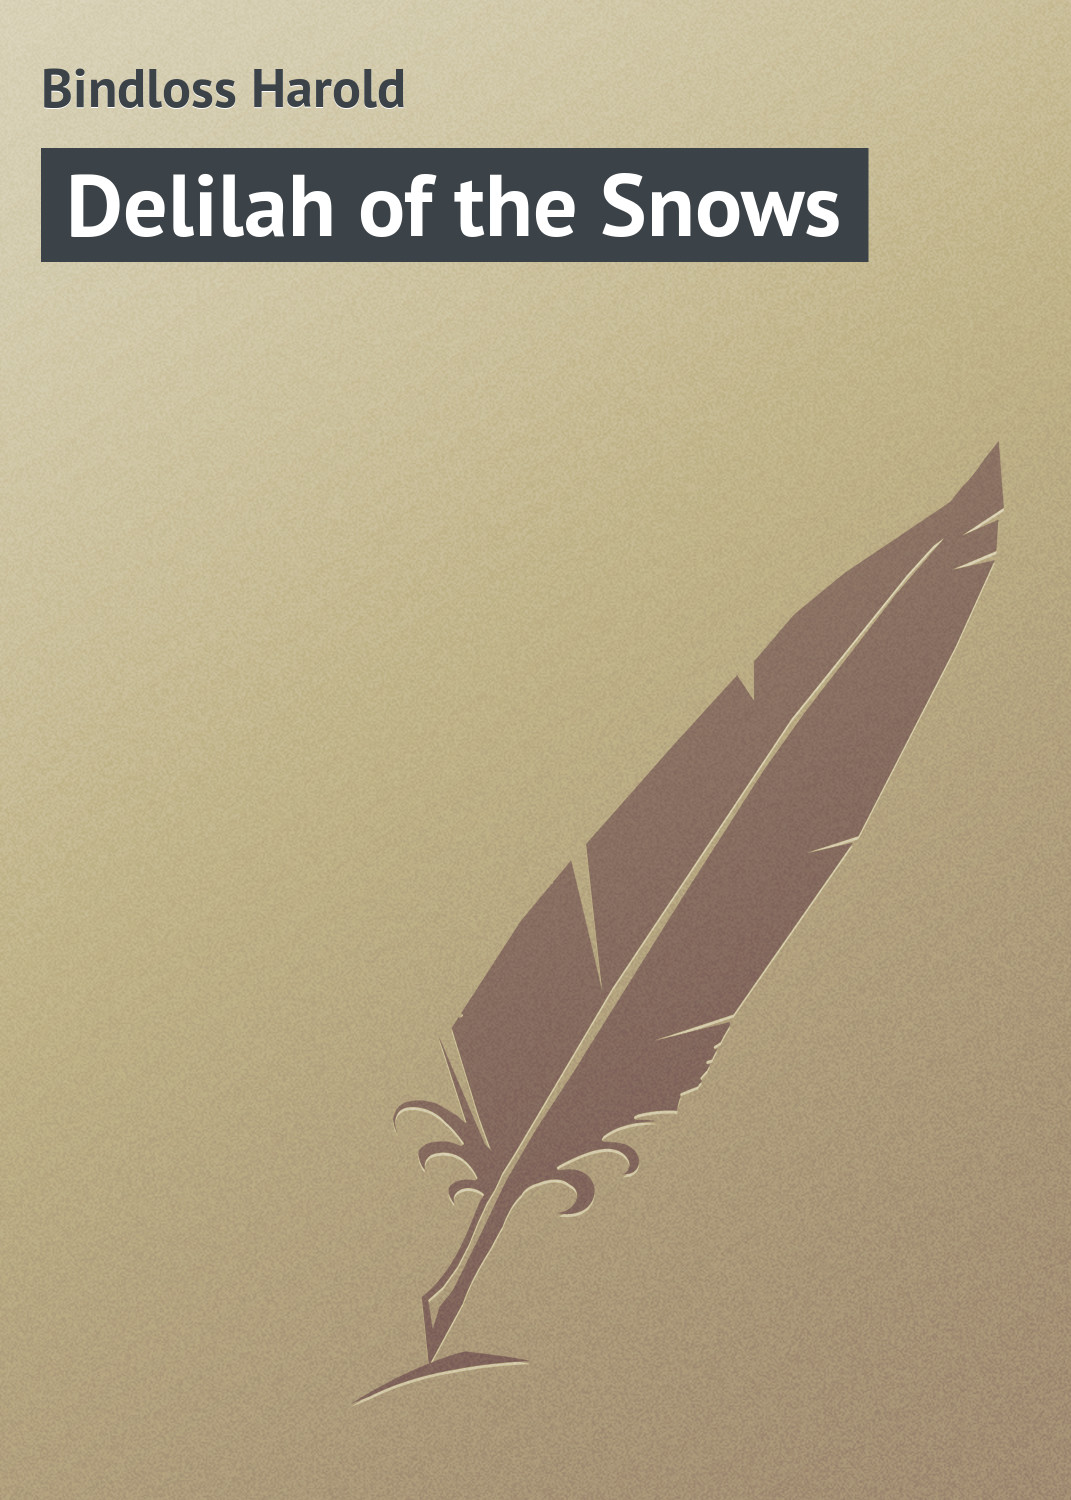 Книга Delilah of the Snows из серии , созданная Harold Bindloss, может относится к жанру Зарубежная классика. Стоимость электронной книги Delilah of the Snows с идентификатором 23154899 составляет 5.99 руб.